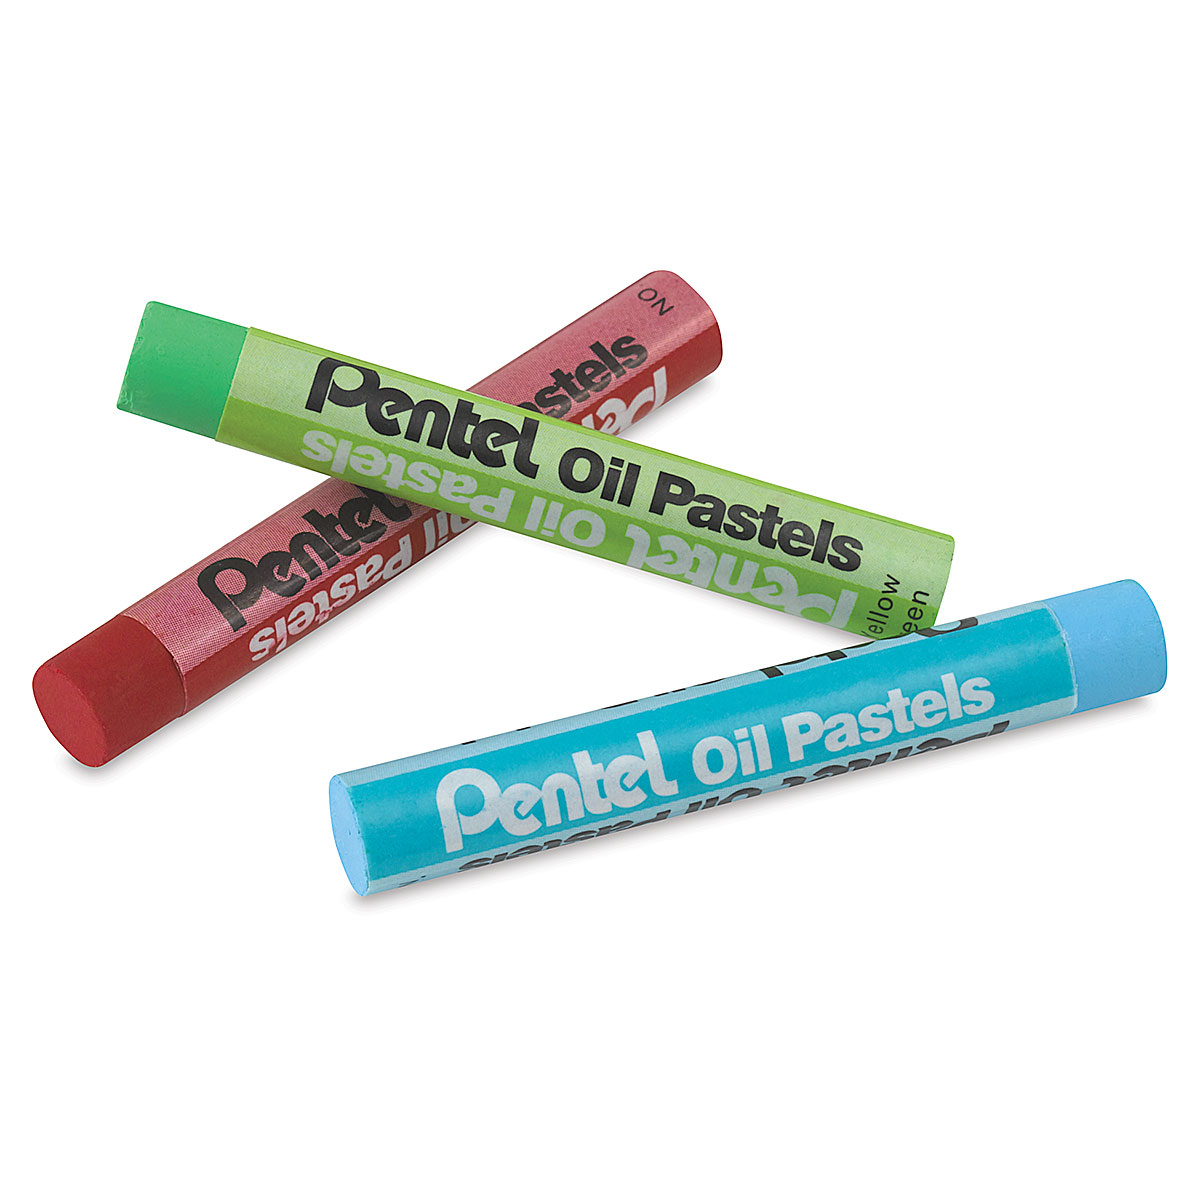 oil pastel